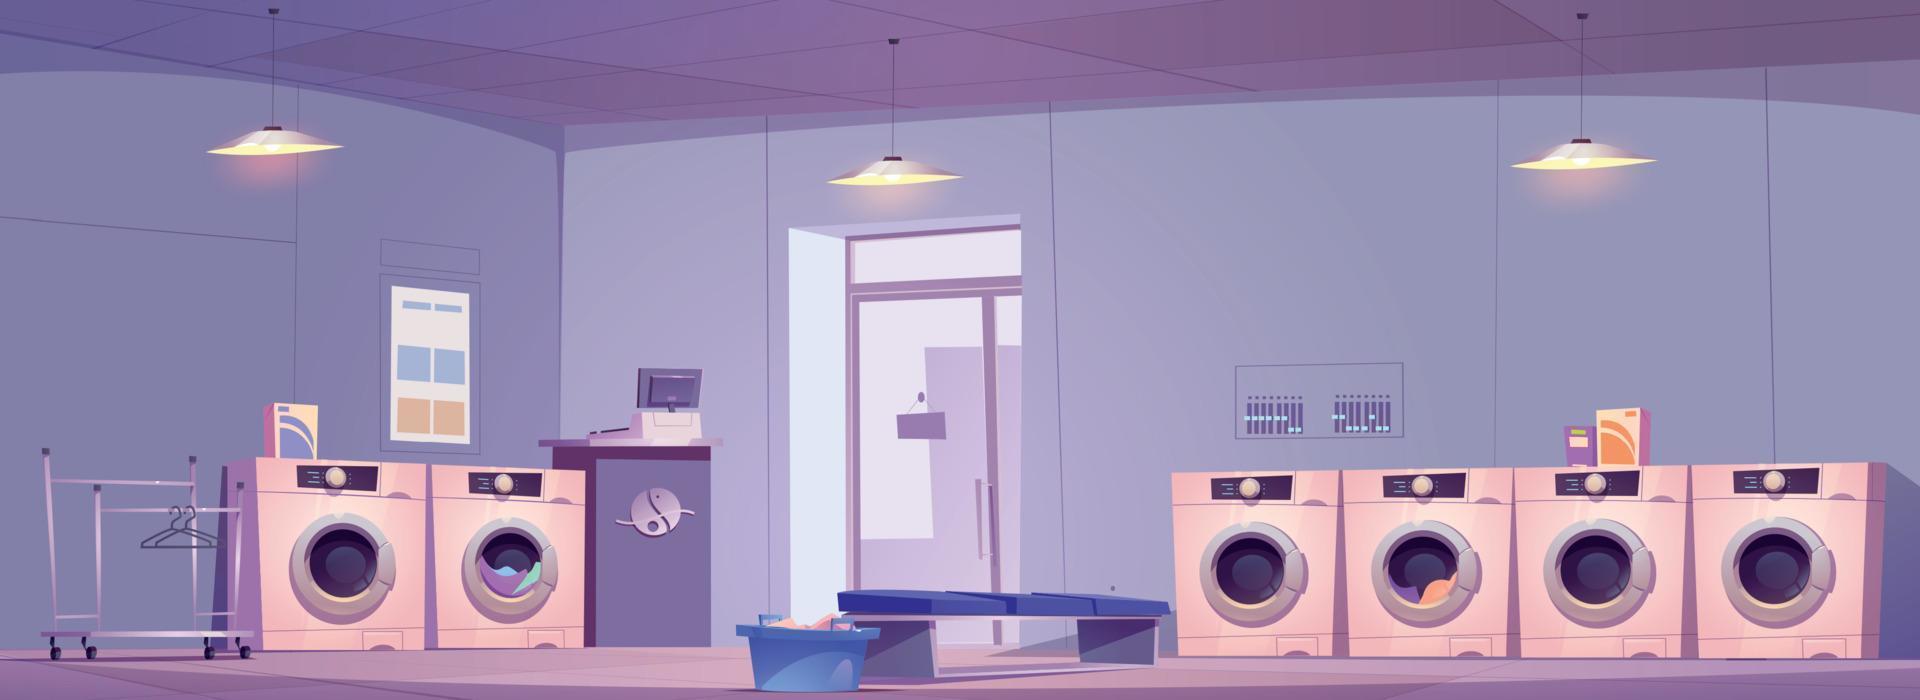 openbaar wasserij kamer interieur ontwerp vector